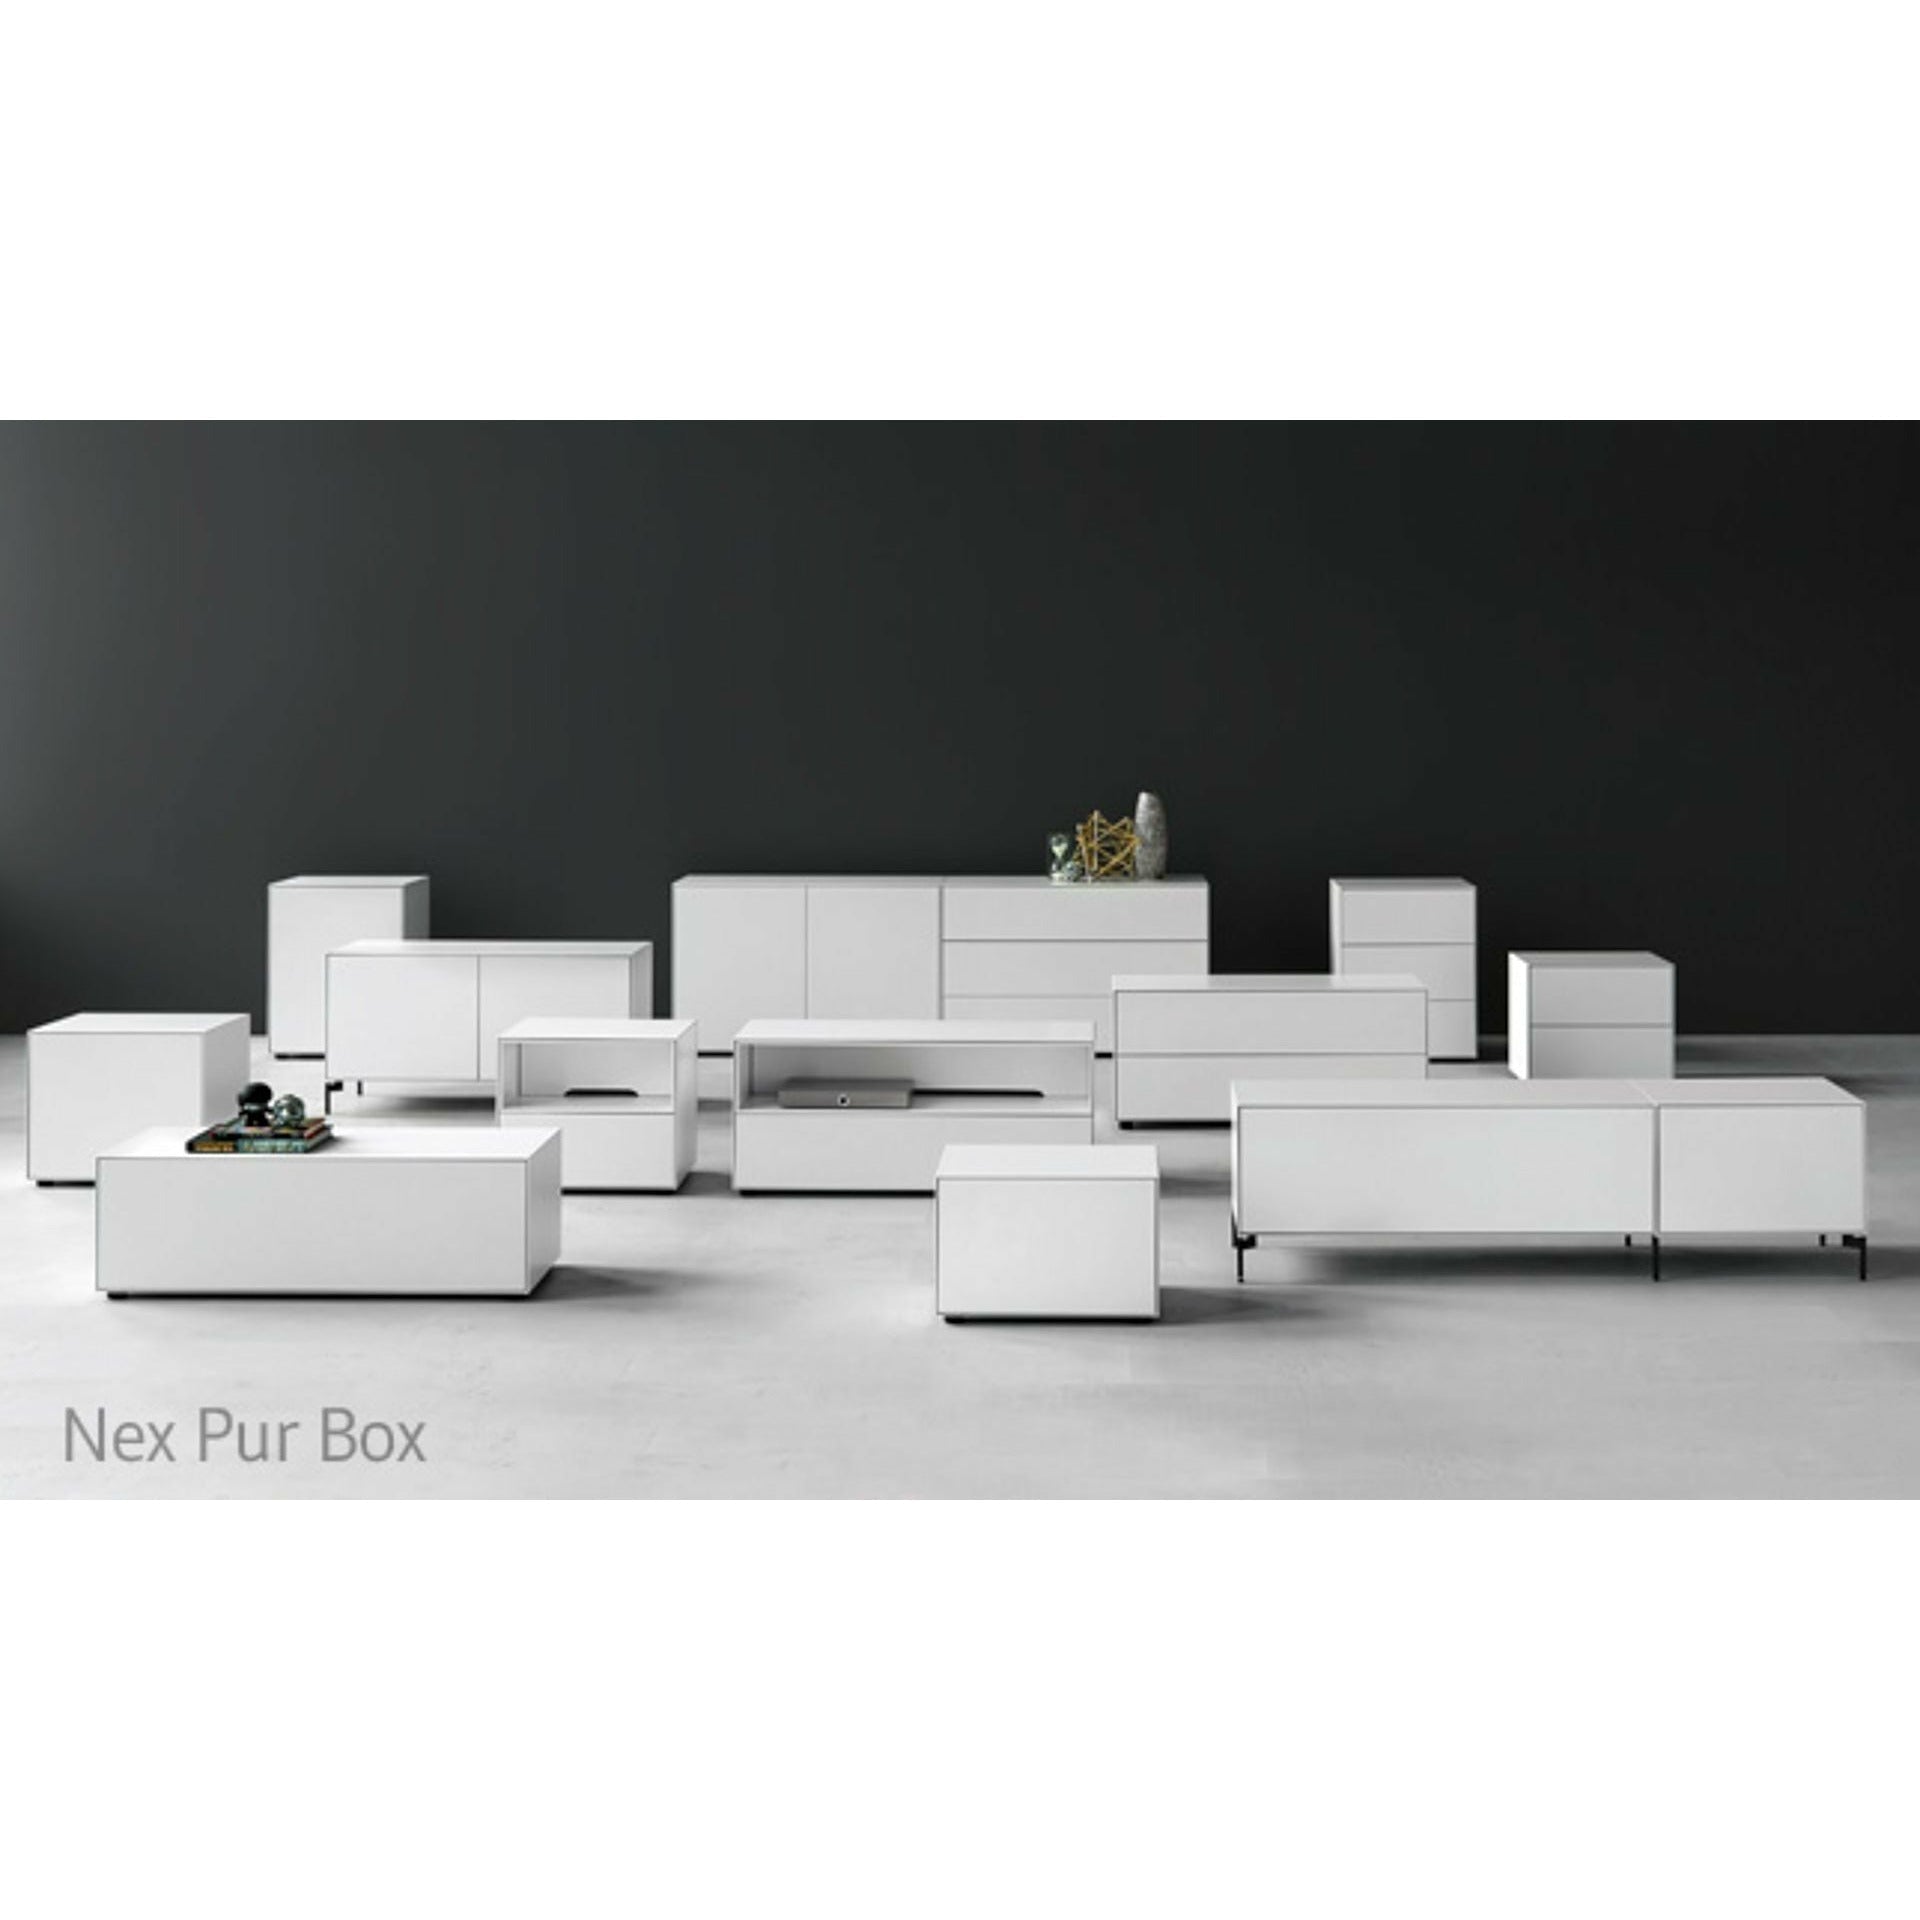 Piure Nex Pur Box Media Flap HX W 37,5x180 cm, 1 plank